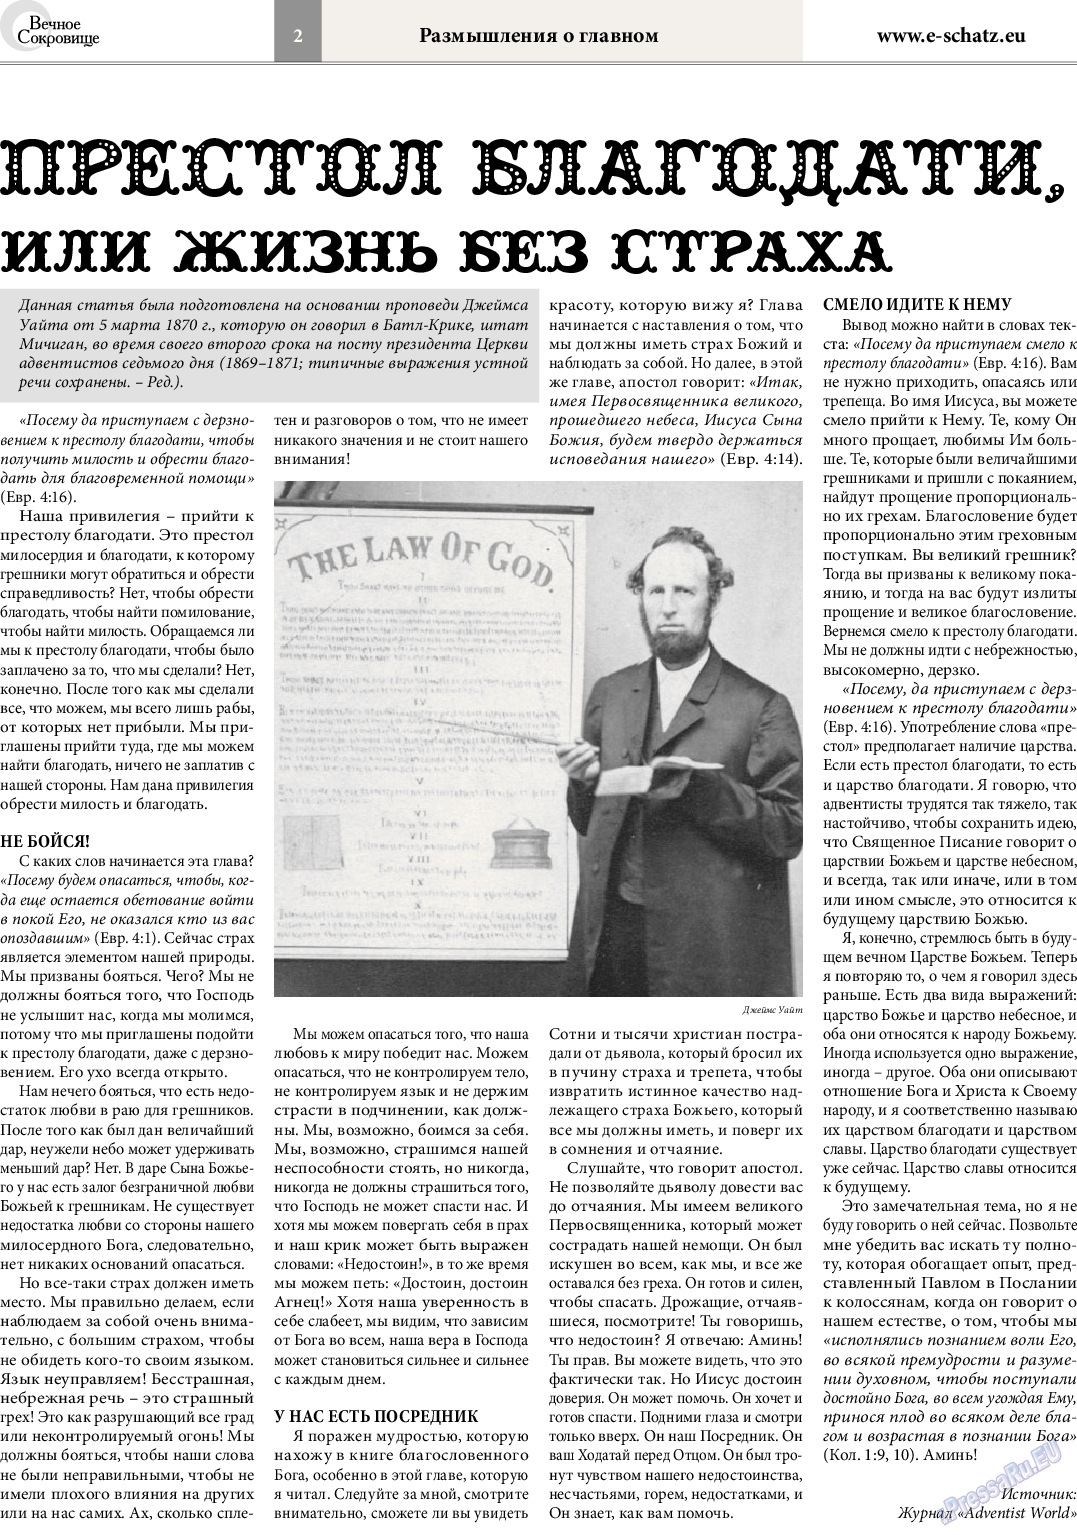 Вечное сокровище, газета. 2014 №4 стр.2